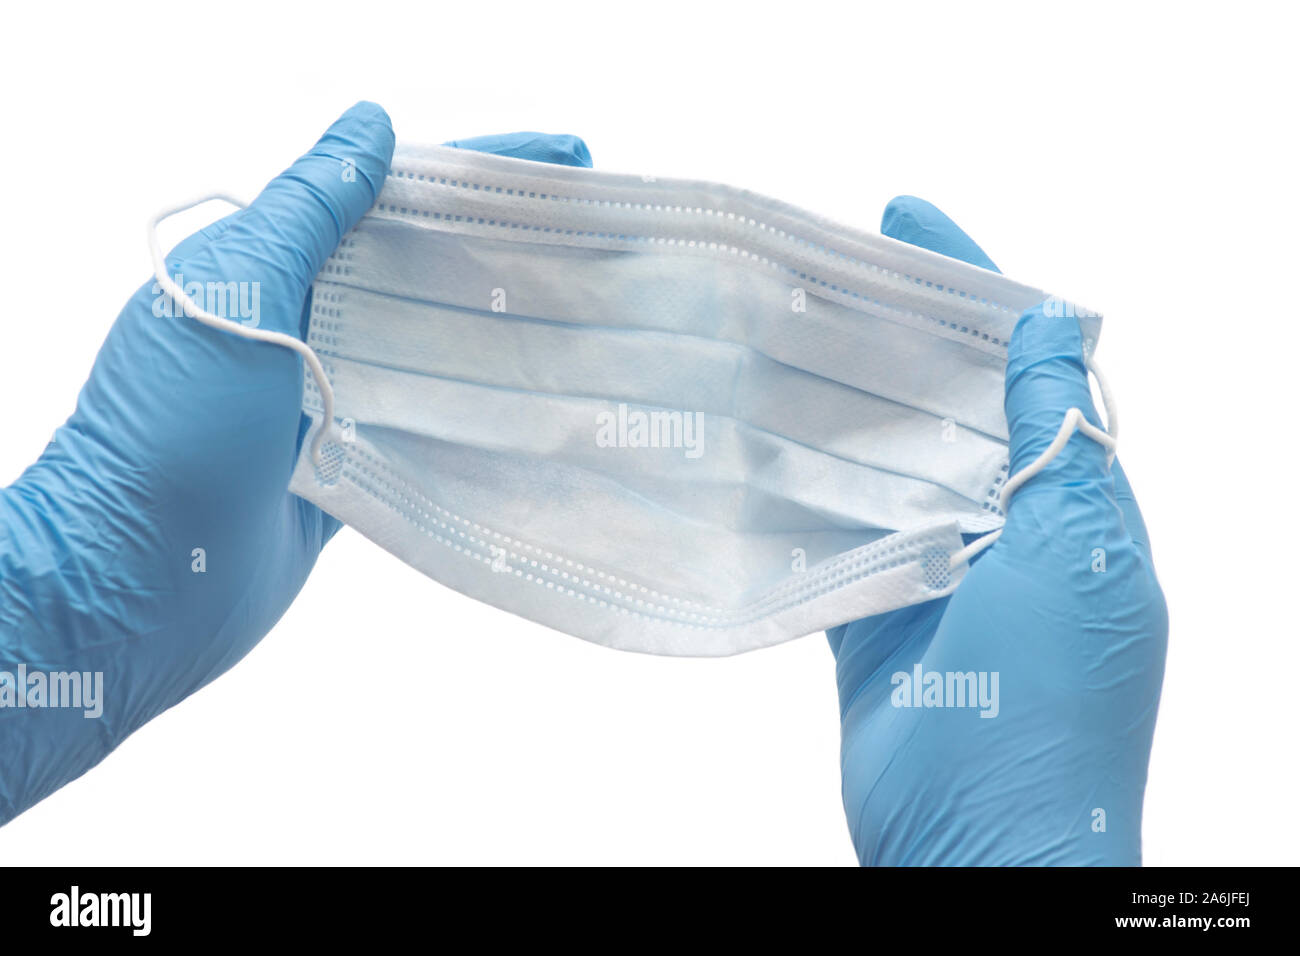 Les mains gantées préparer infection control masque pour être porté par un professionnel de la santé. Banque D'Images